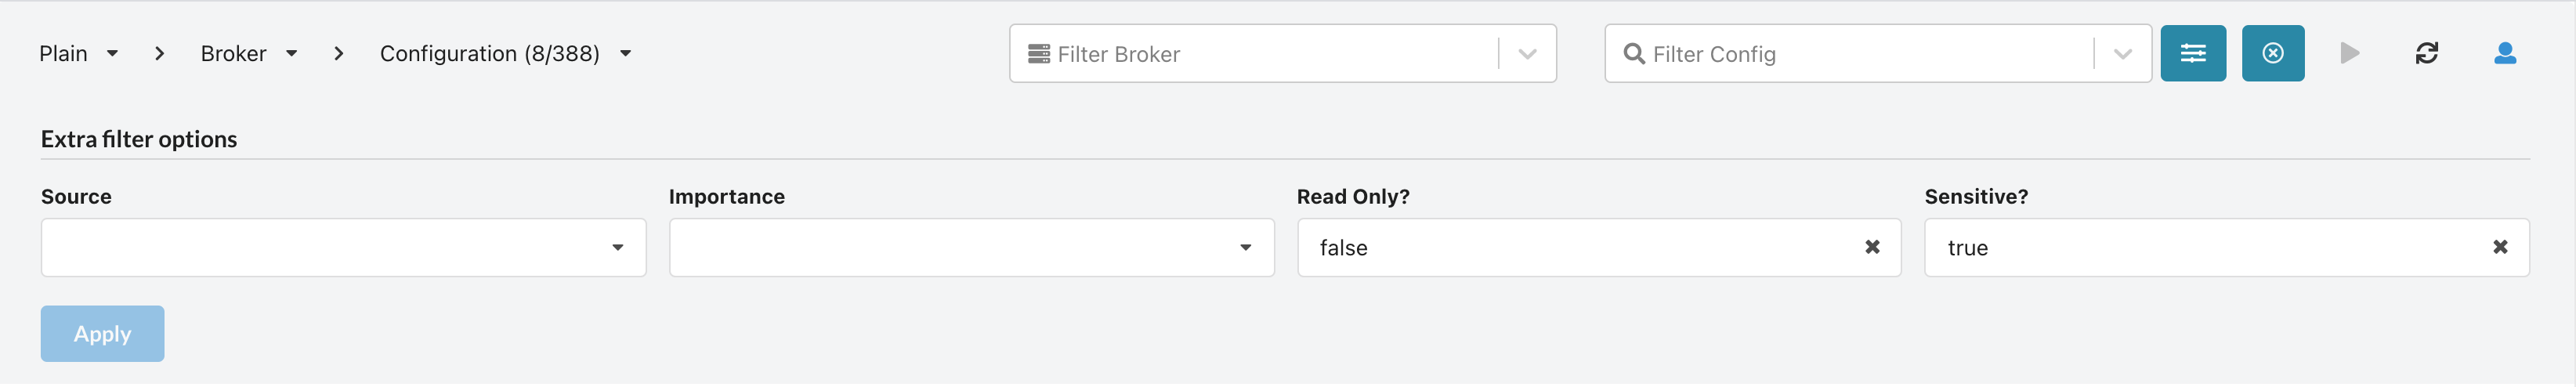 Filtering broker configuration